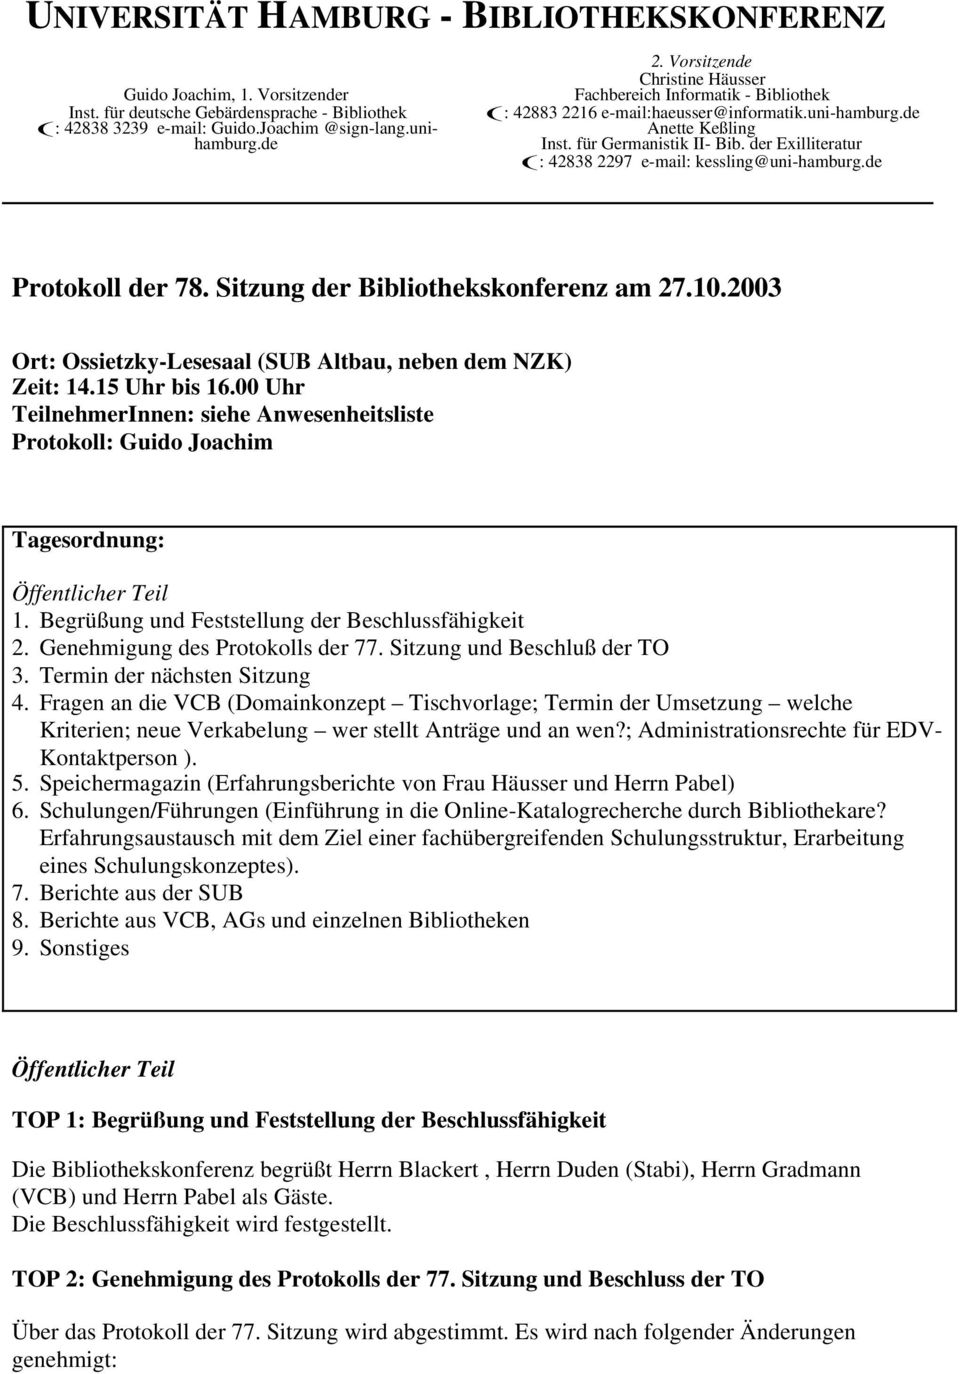 der Exilliteratur (: 42838 2297 e-mail: kessling@uni-hamburg.de Protokoll der 78. Sitzung der Bibliothekskonferenz am 27.10.2003 Ort: Ossietzky-Lesesaal (SUB Altbau, neben dem NZK) Zeit: 14.